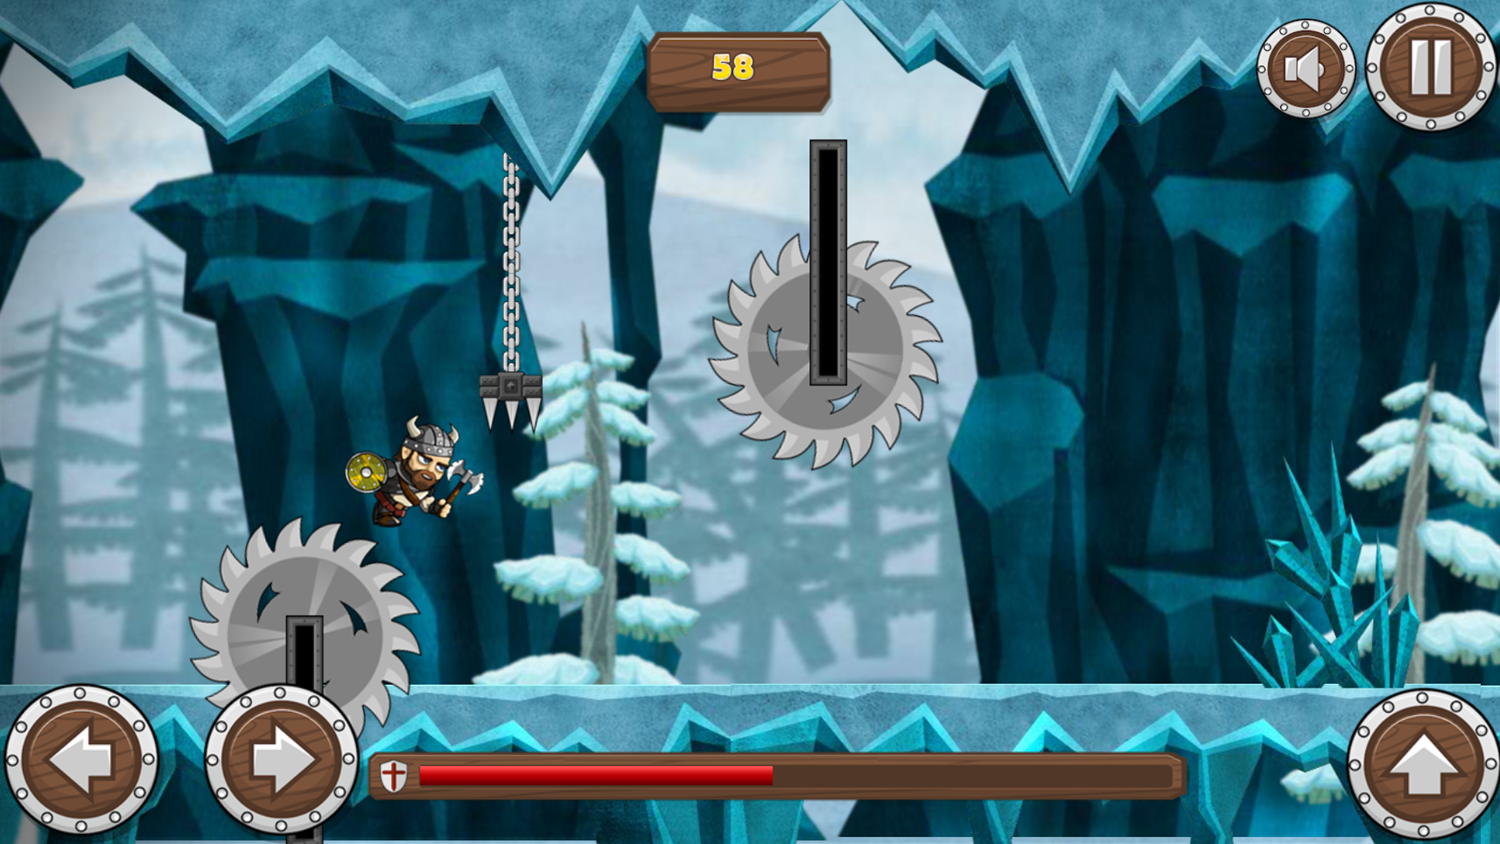 Viking Way Game Play Screenshot.